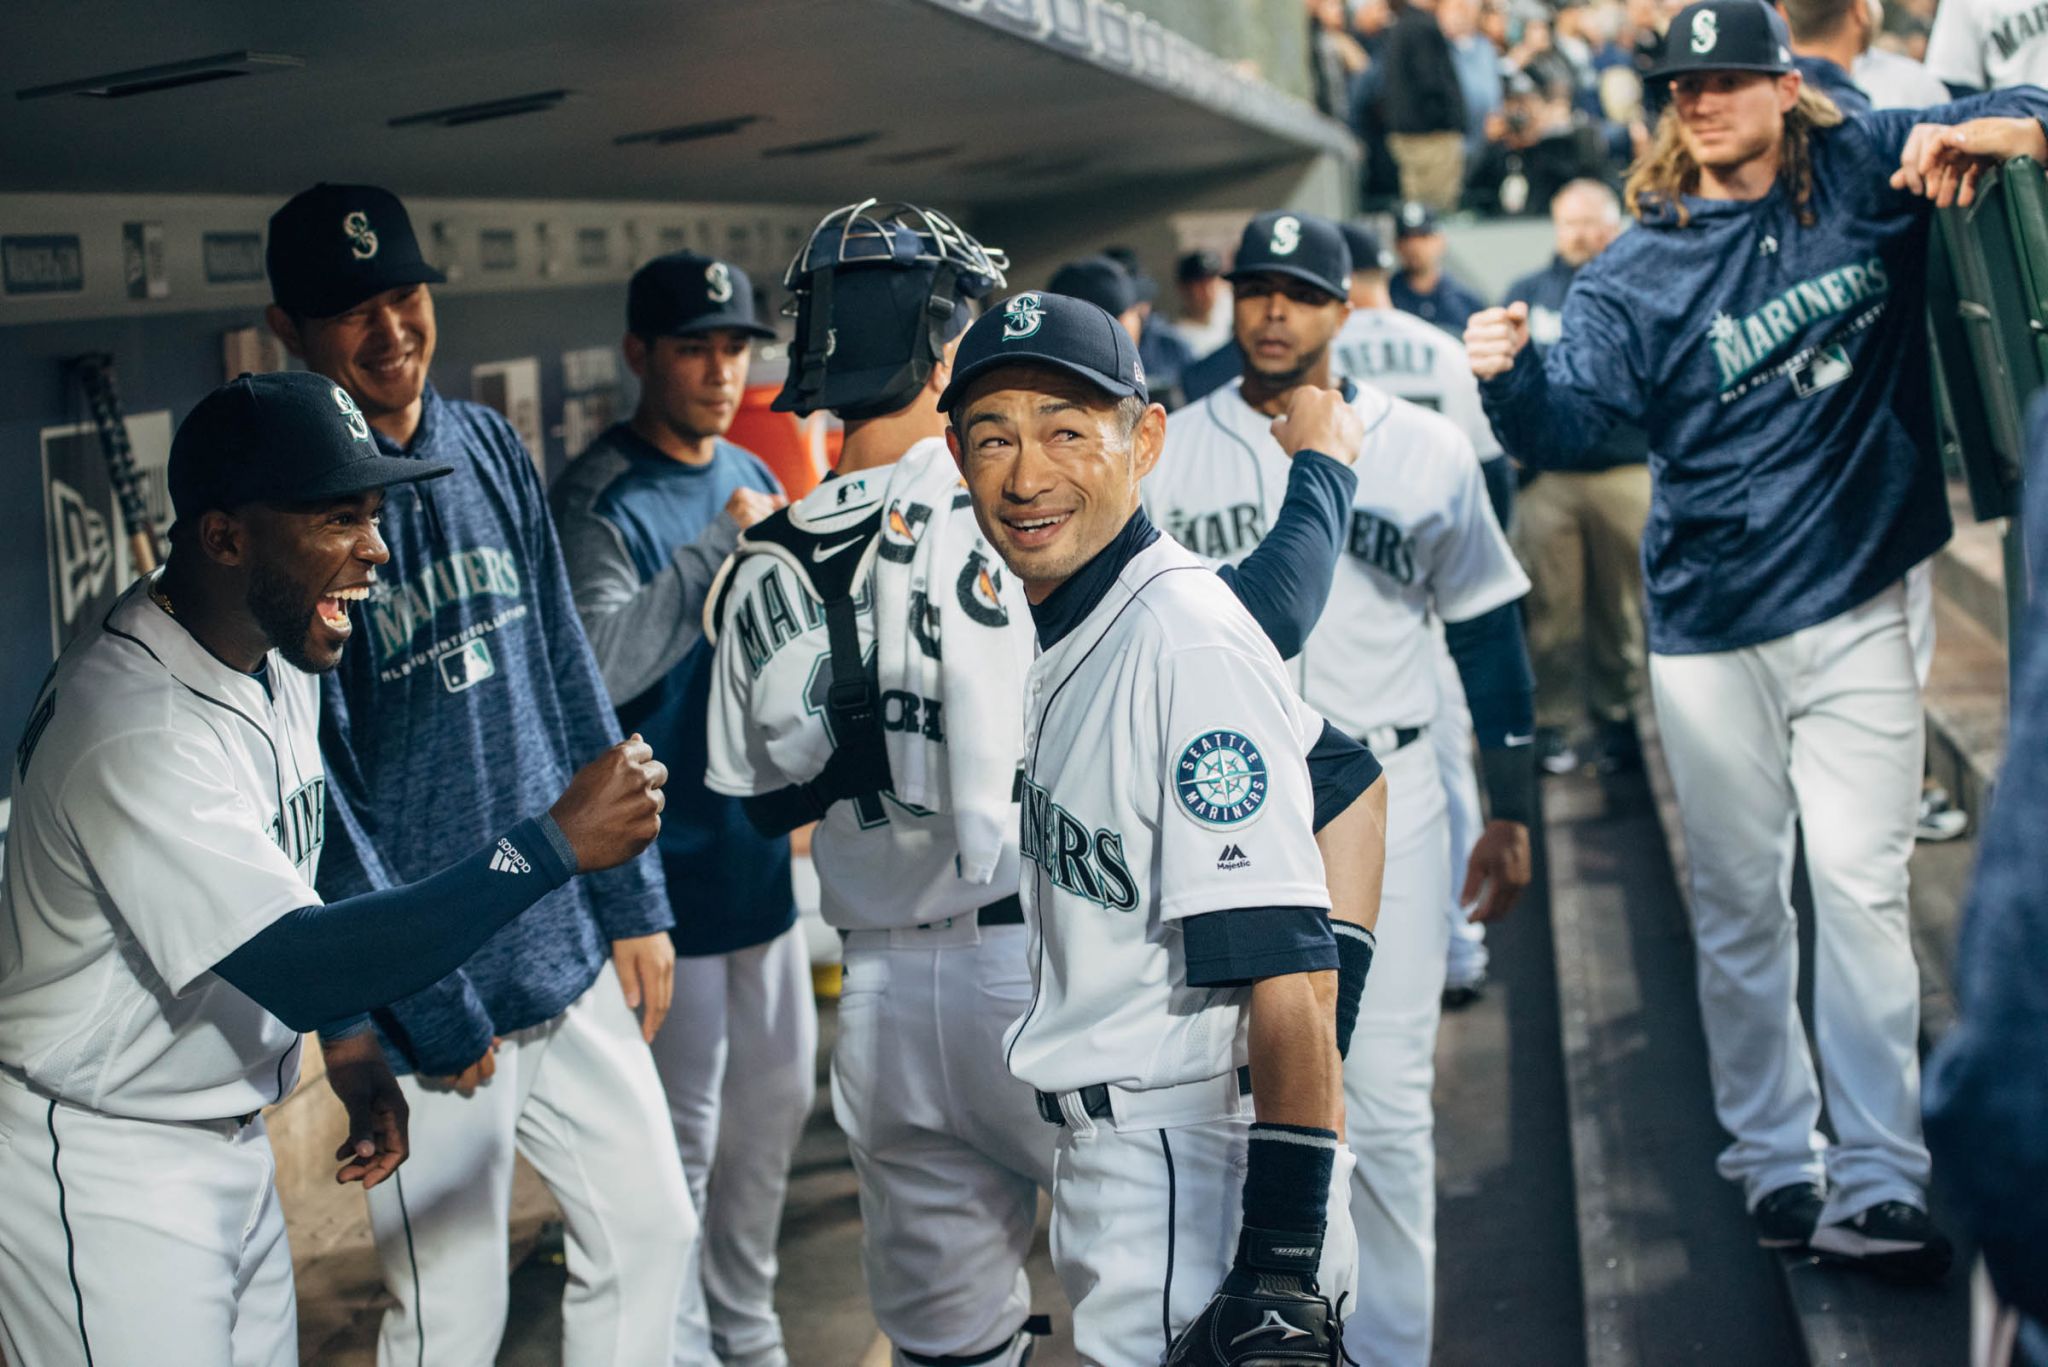 Ichiro Suzuki, 44, Mariners near agreement on contract